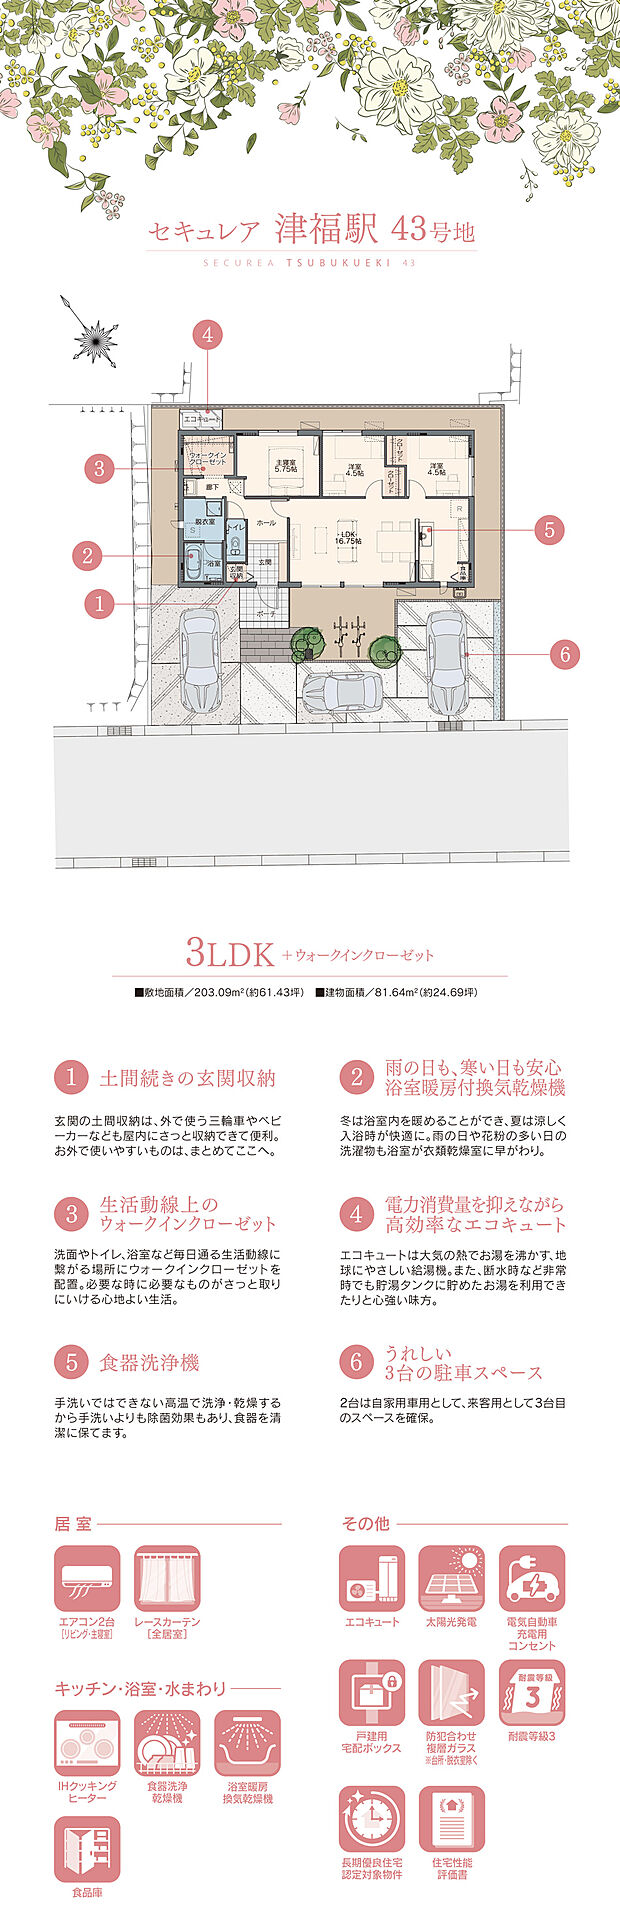 【3LDK】間取・外構植栽図は設計図書を基に描き起こしたもので実際とは多少異なる場合があります。 ダイニングテーブルセットは価格に含まれますが、その他の家具・家電・備品・車等は価格に含まれません。